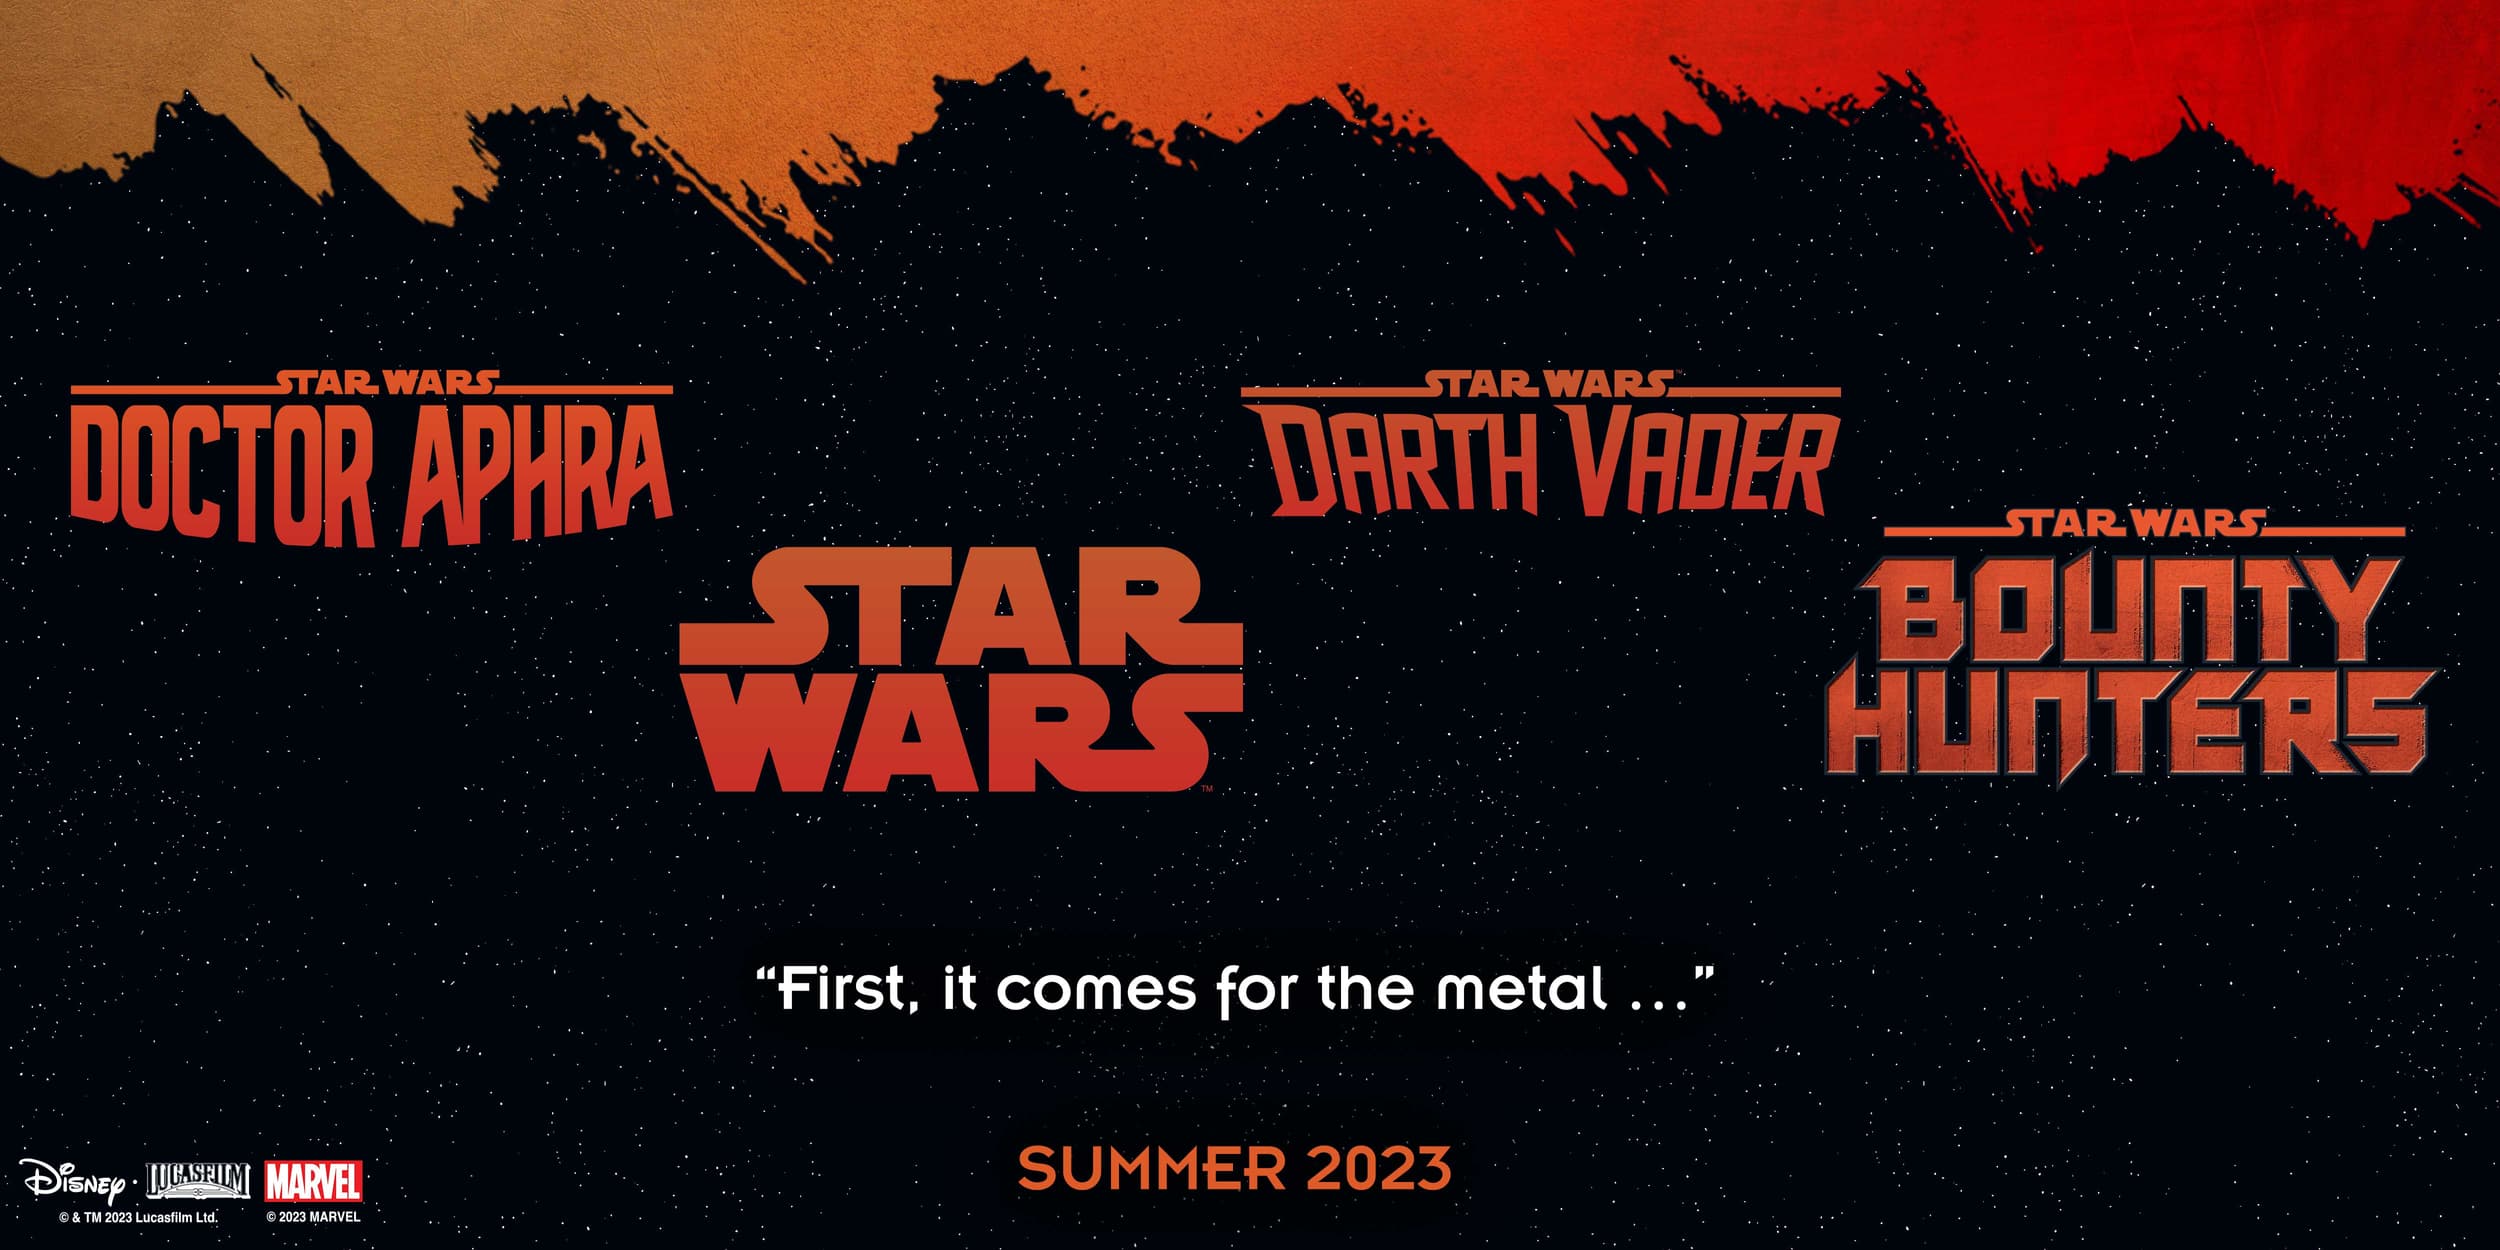 Summer 2023's Star Wars Crossover